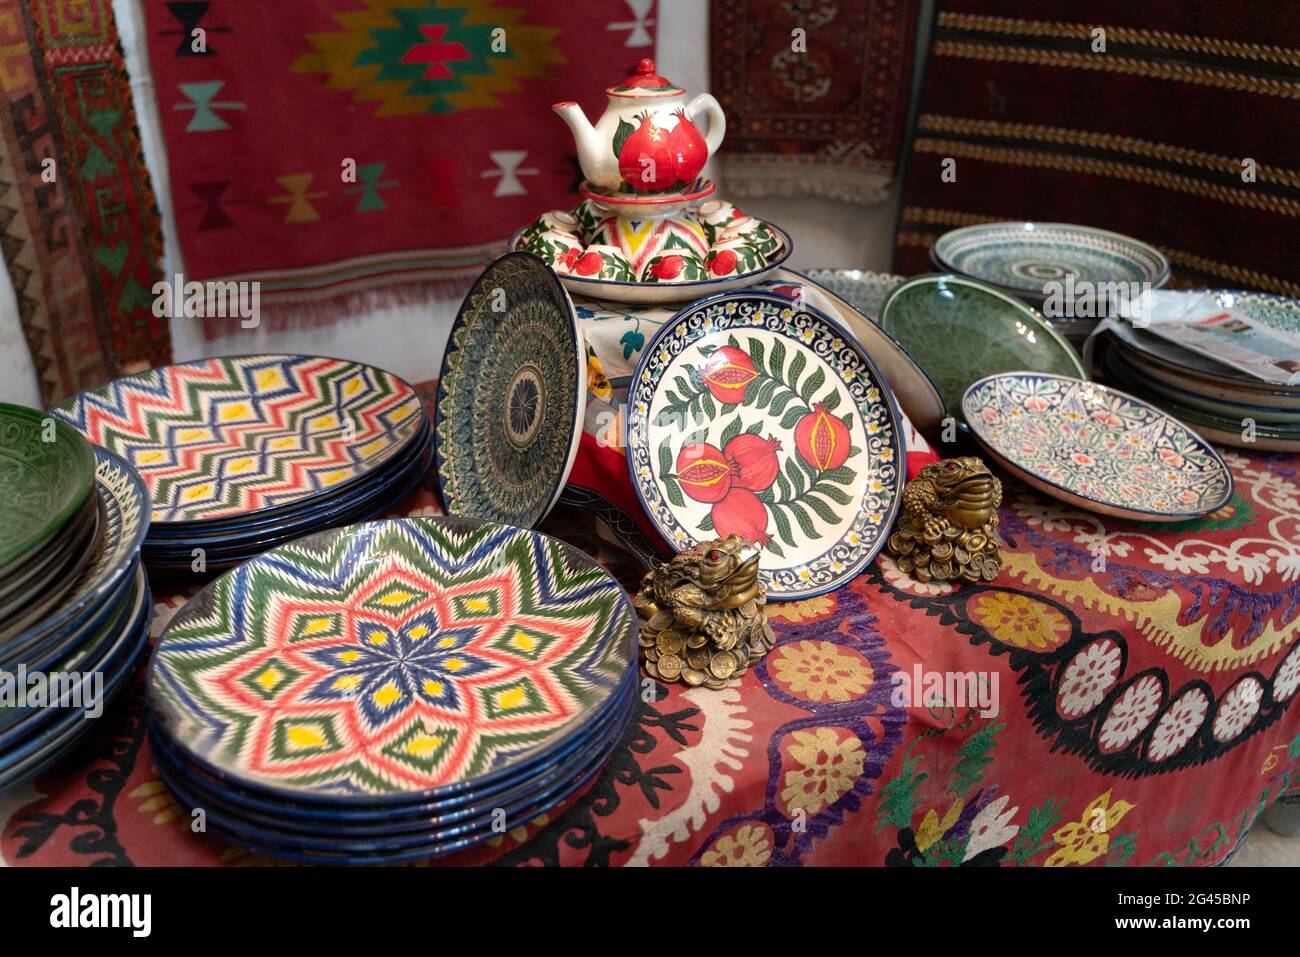 El mercado uzbeko con platos tradicionales de uzbekistán en Bujara Foto de stock